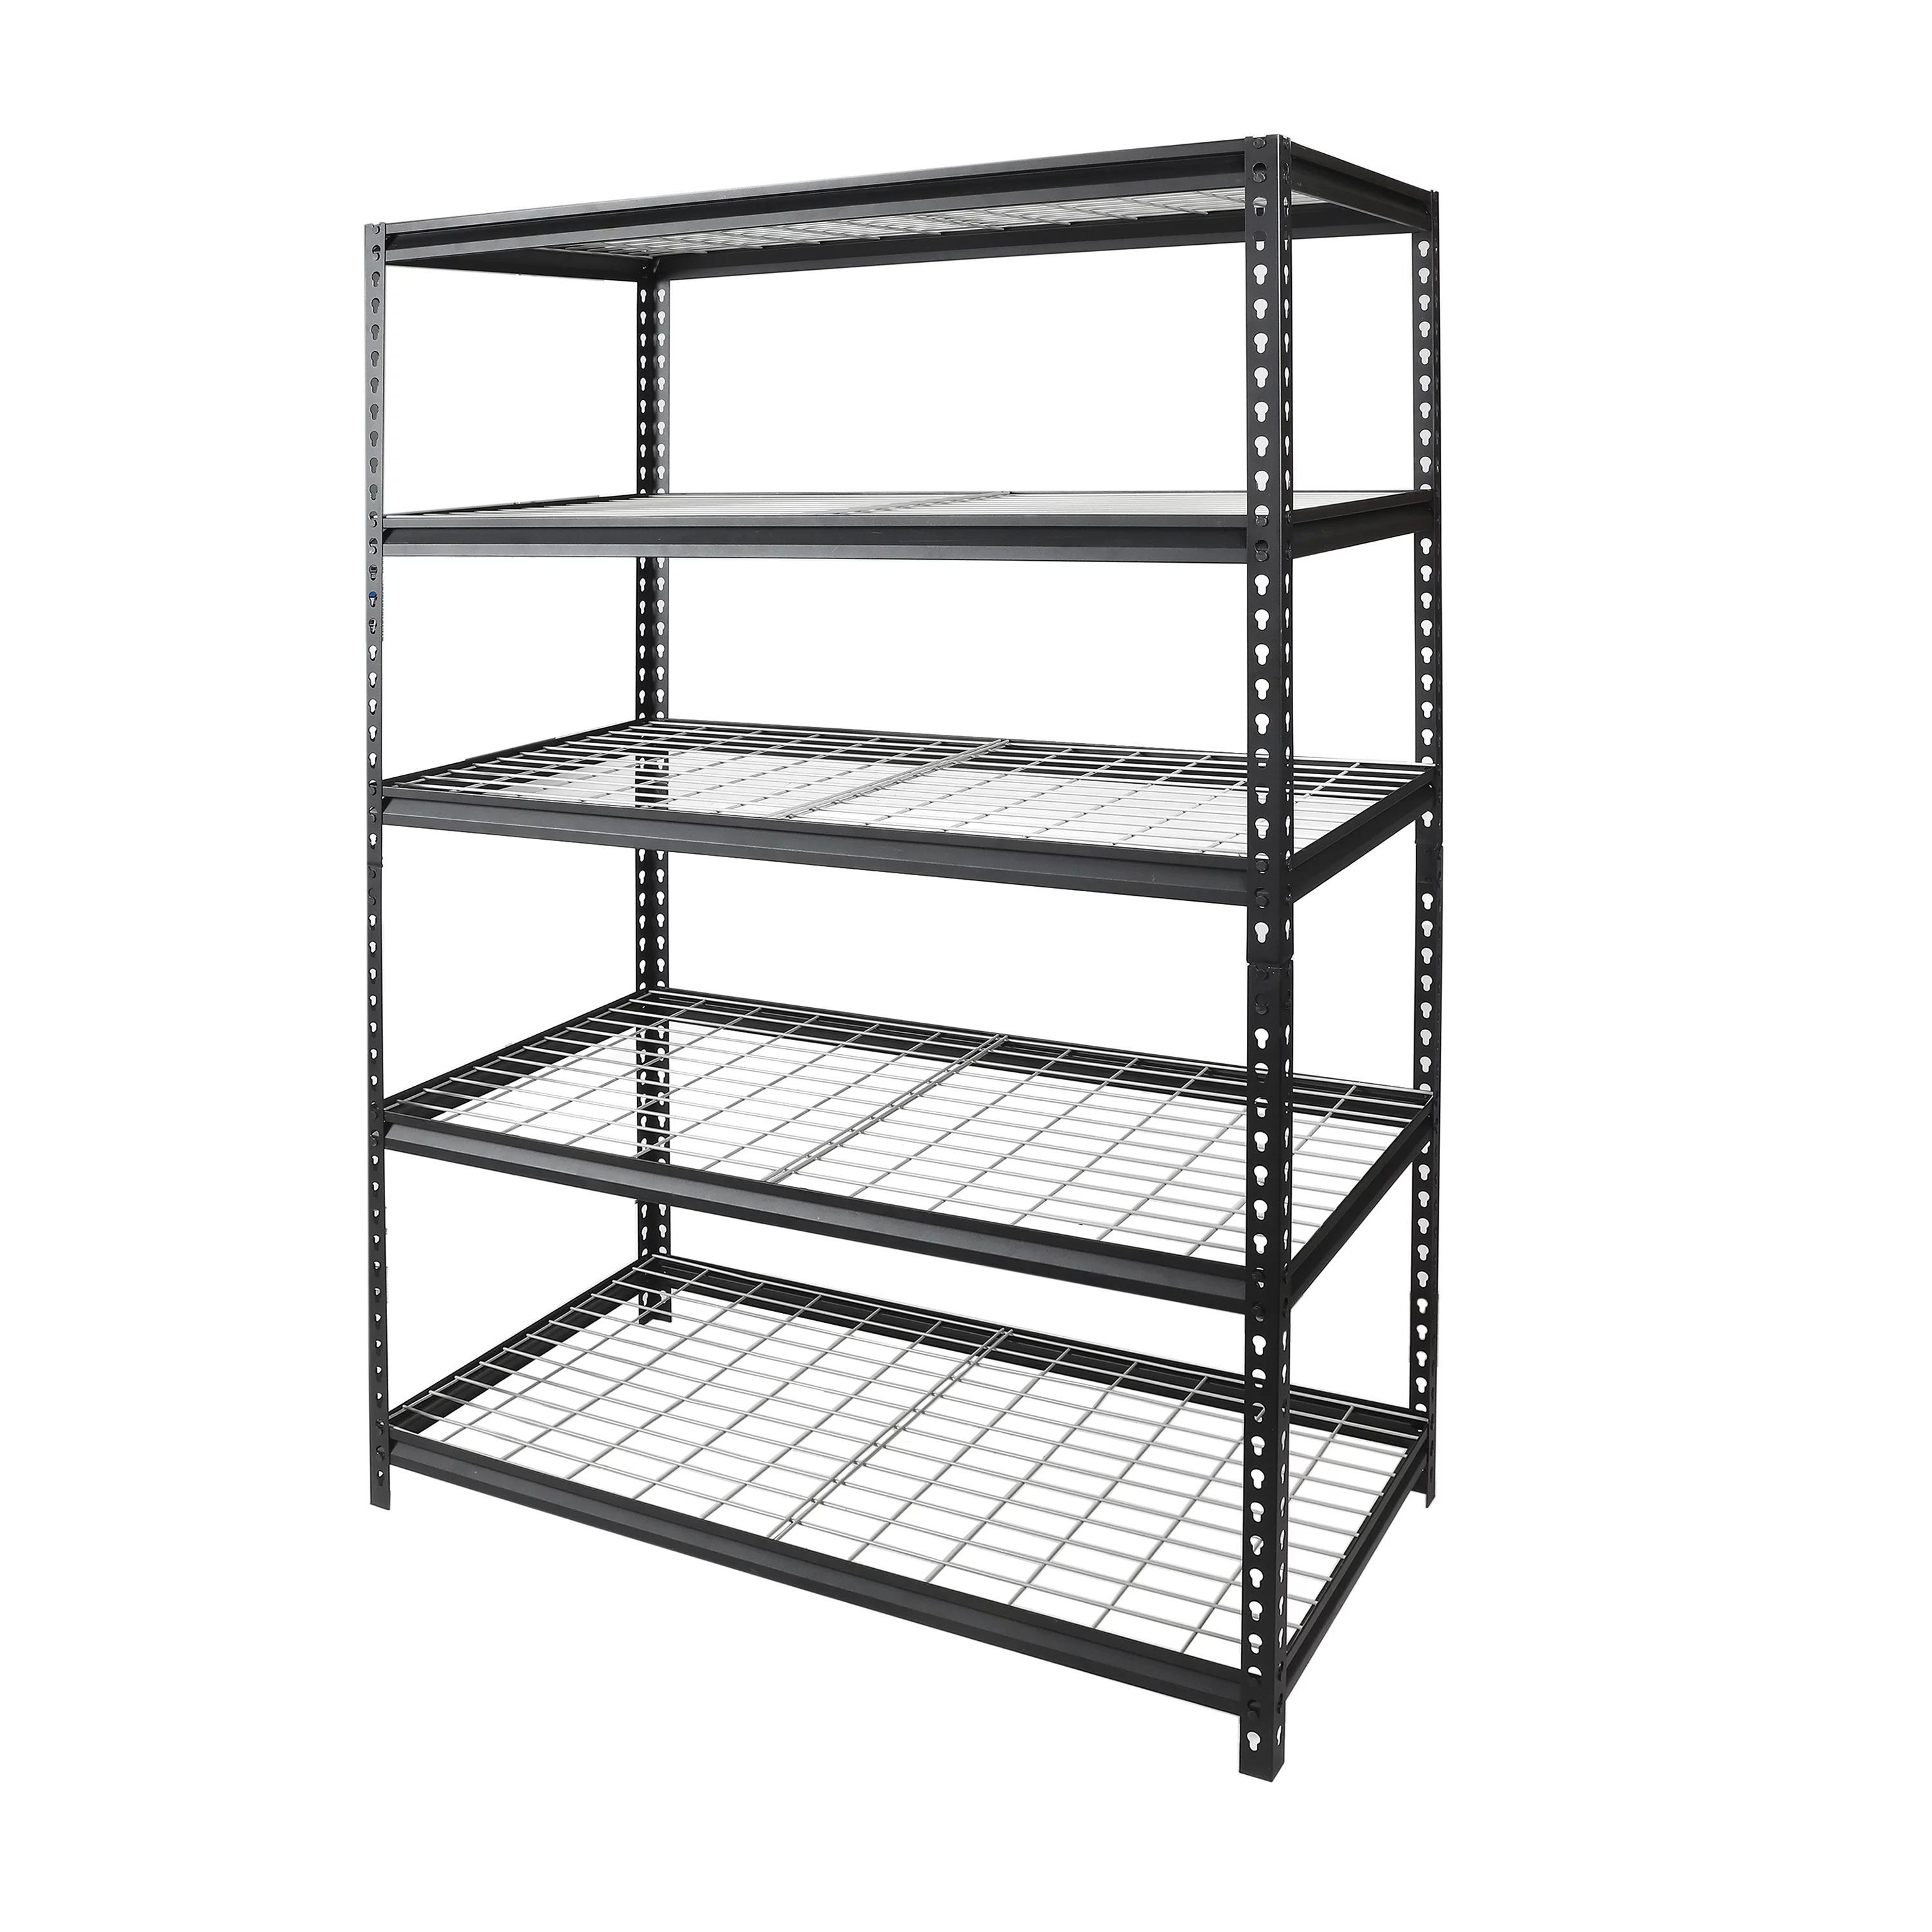 5-Shelf Workpro Freestanding Shelves for $114.88 Shipped